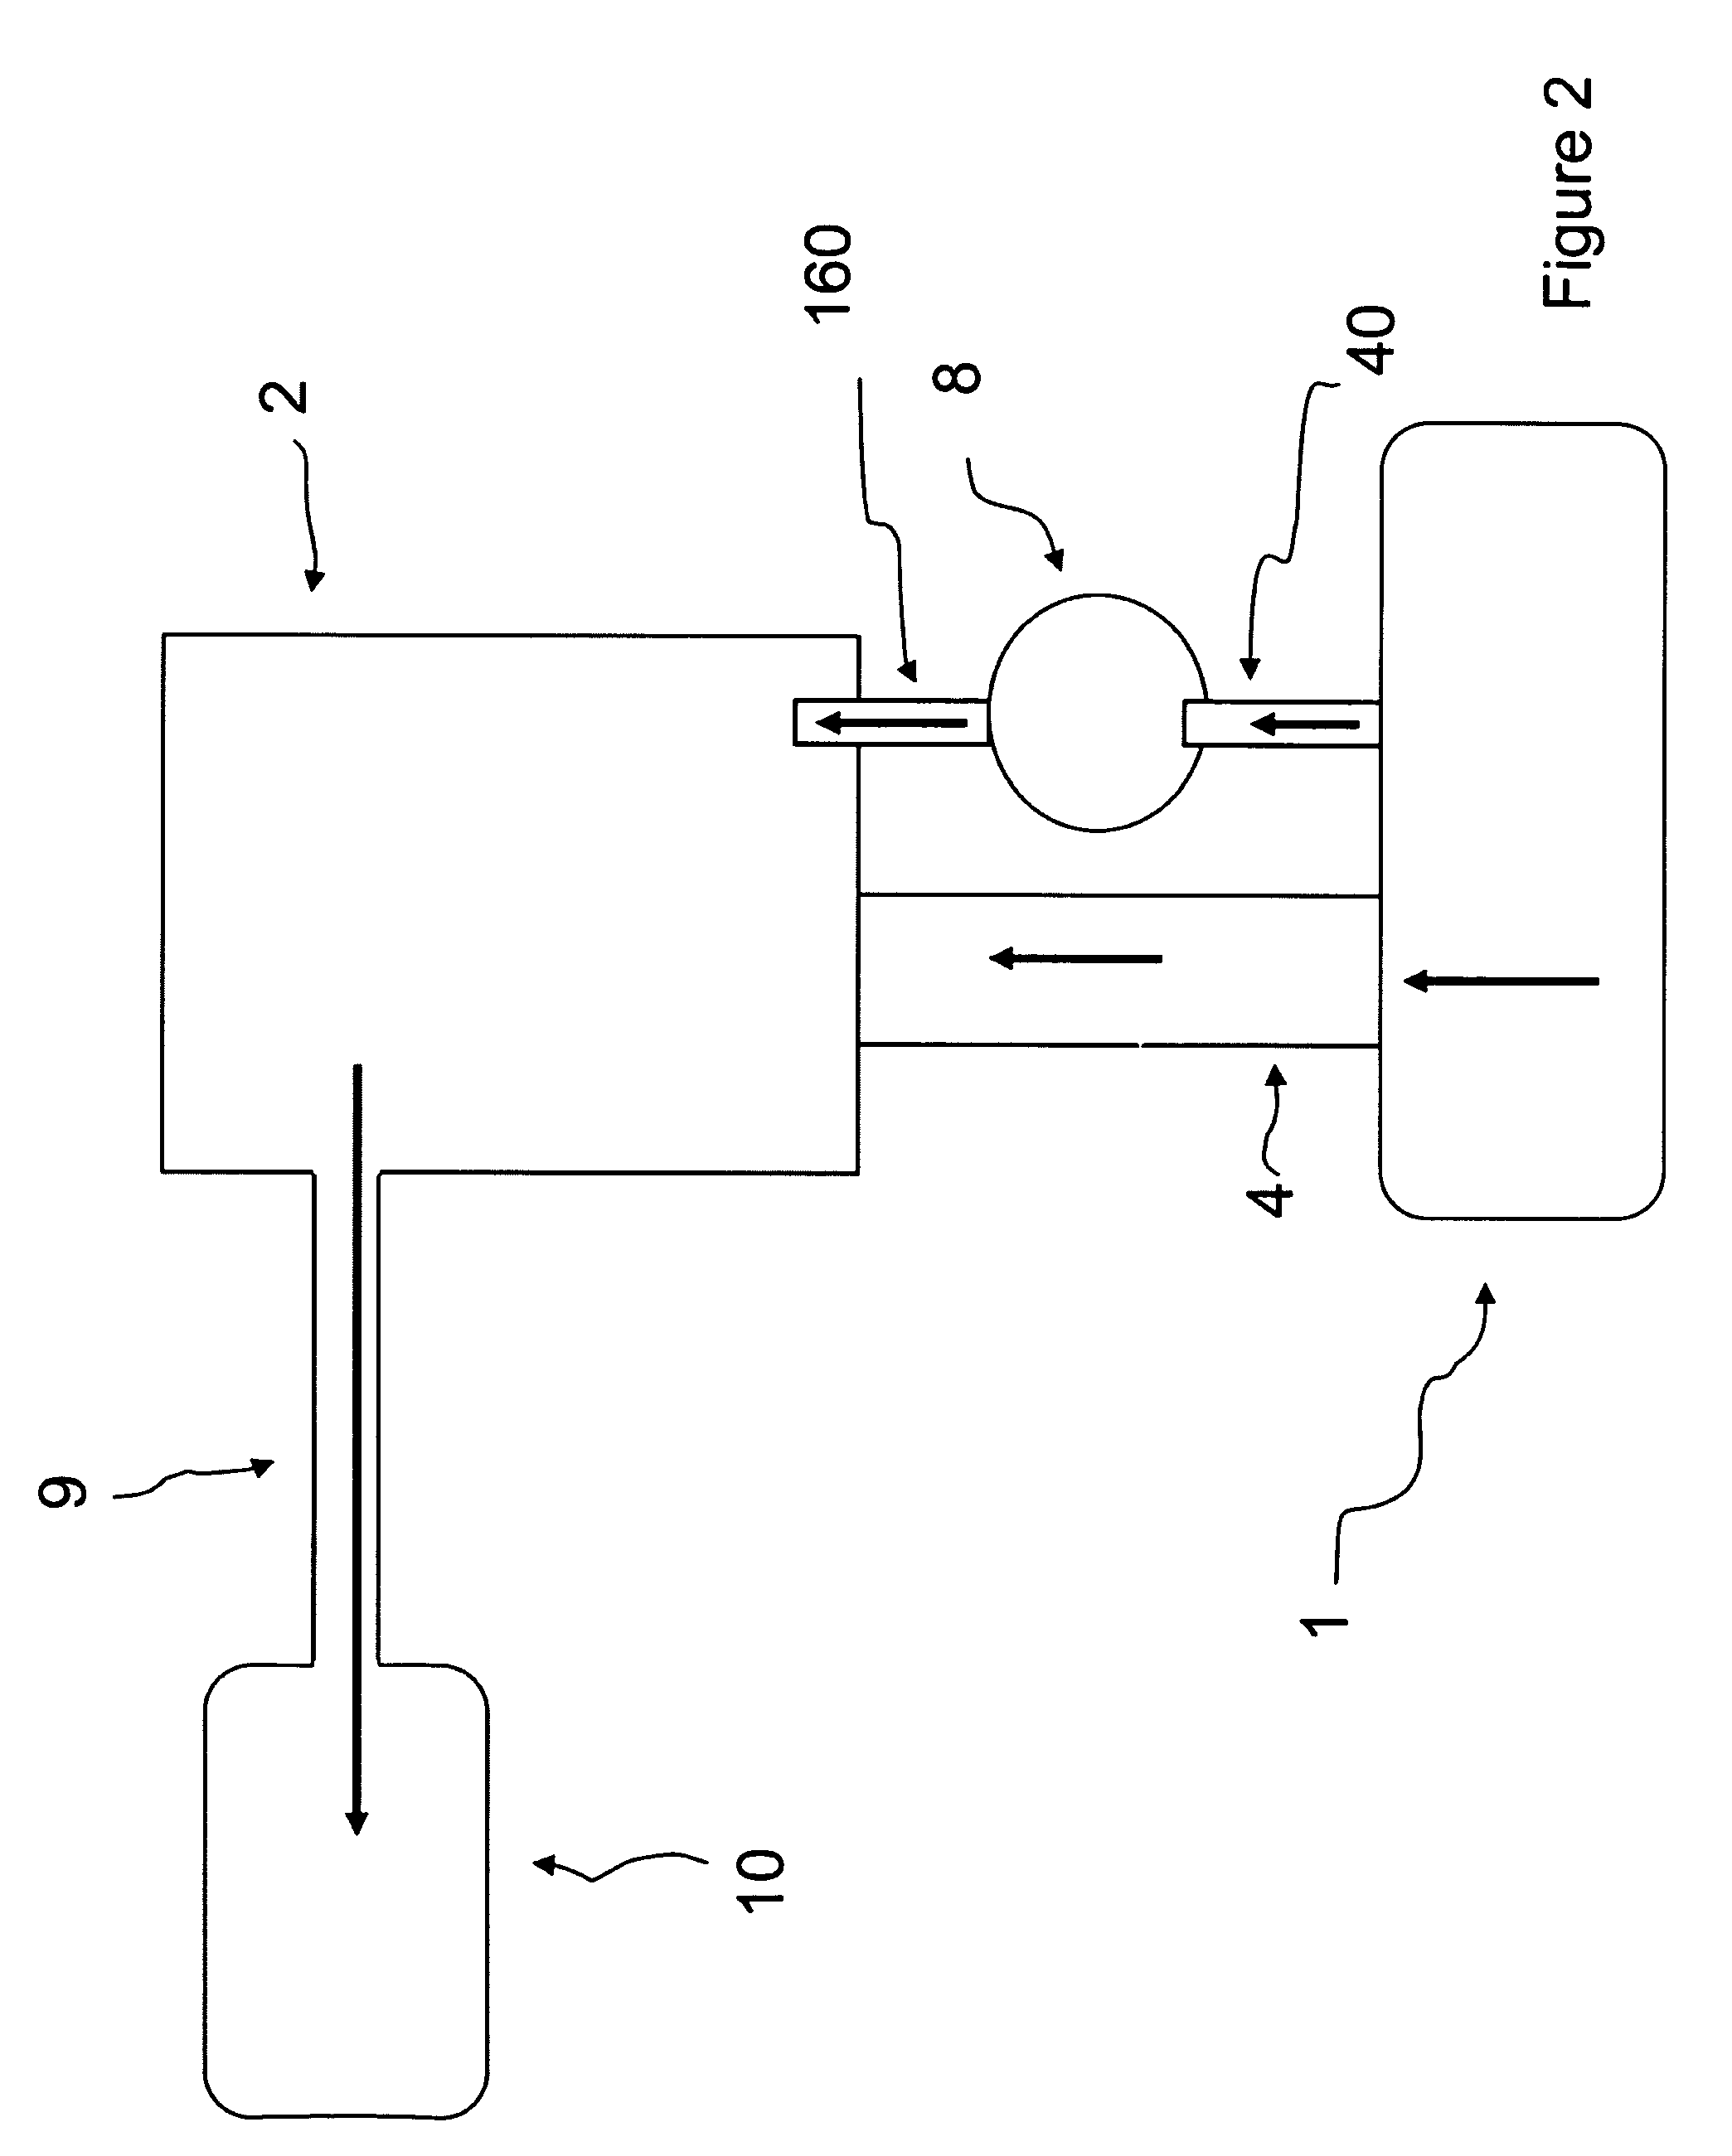 Arrangement of denitrification reactors in a recirculating aquaculture system